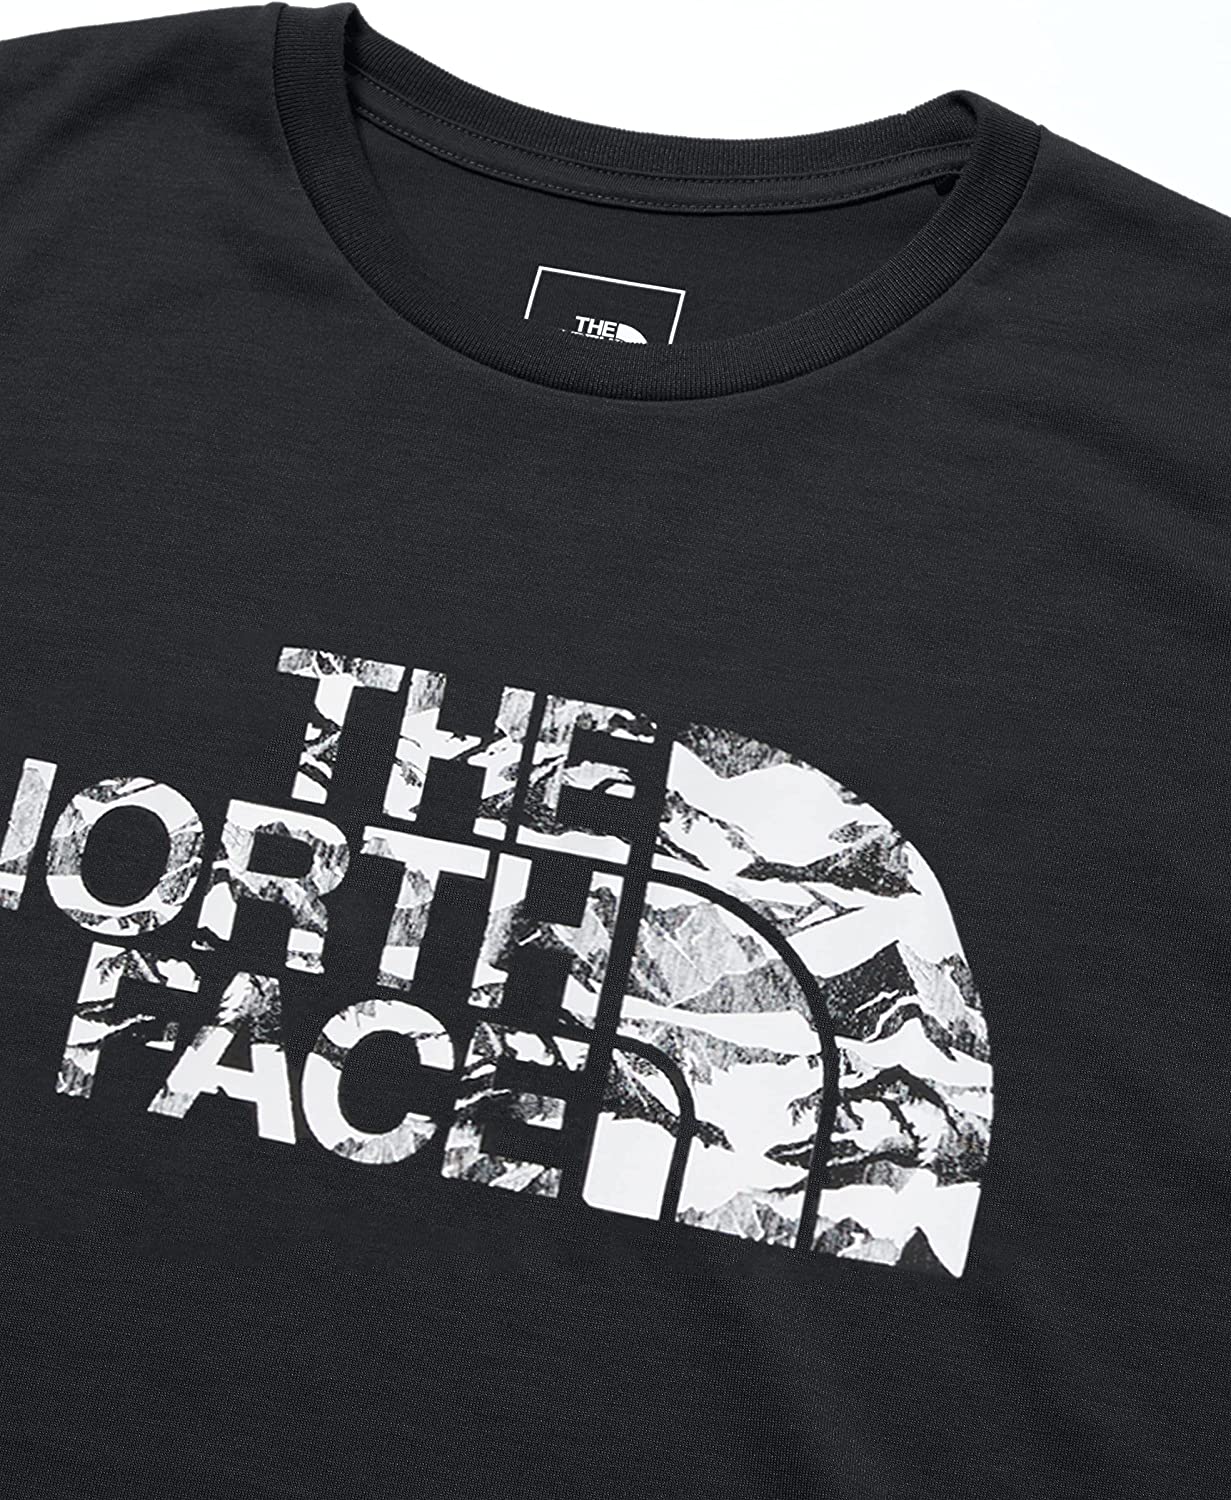 THE NORTH FACE（ザノースフェイス）のロゴTシャツ」おすすめ6選